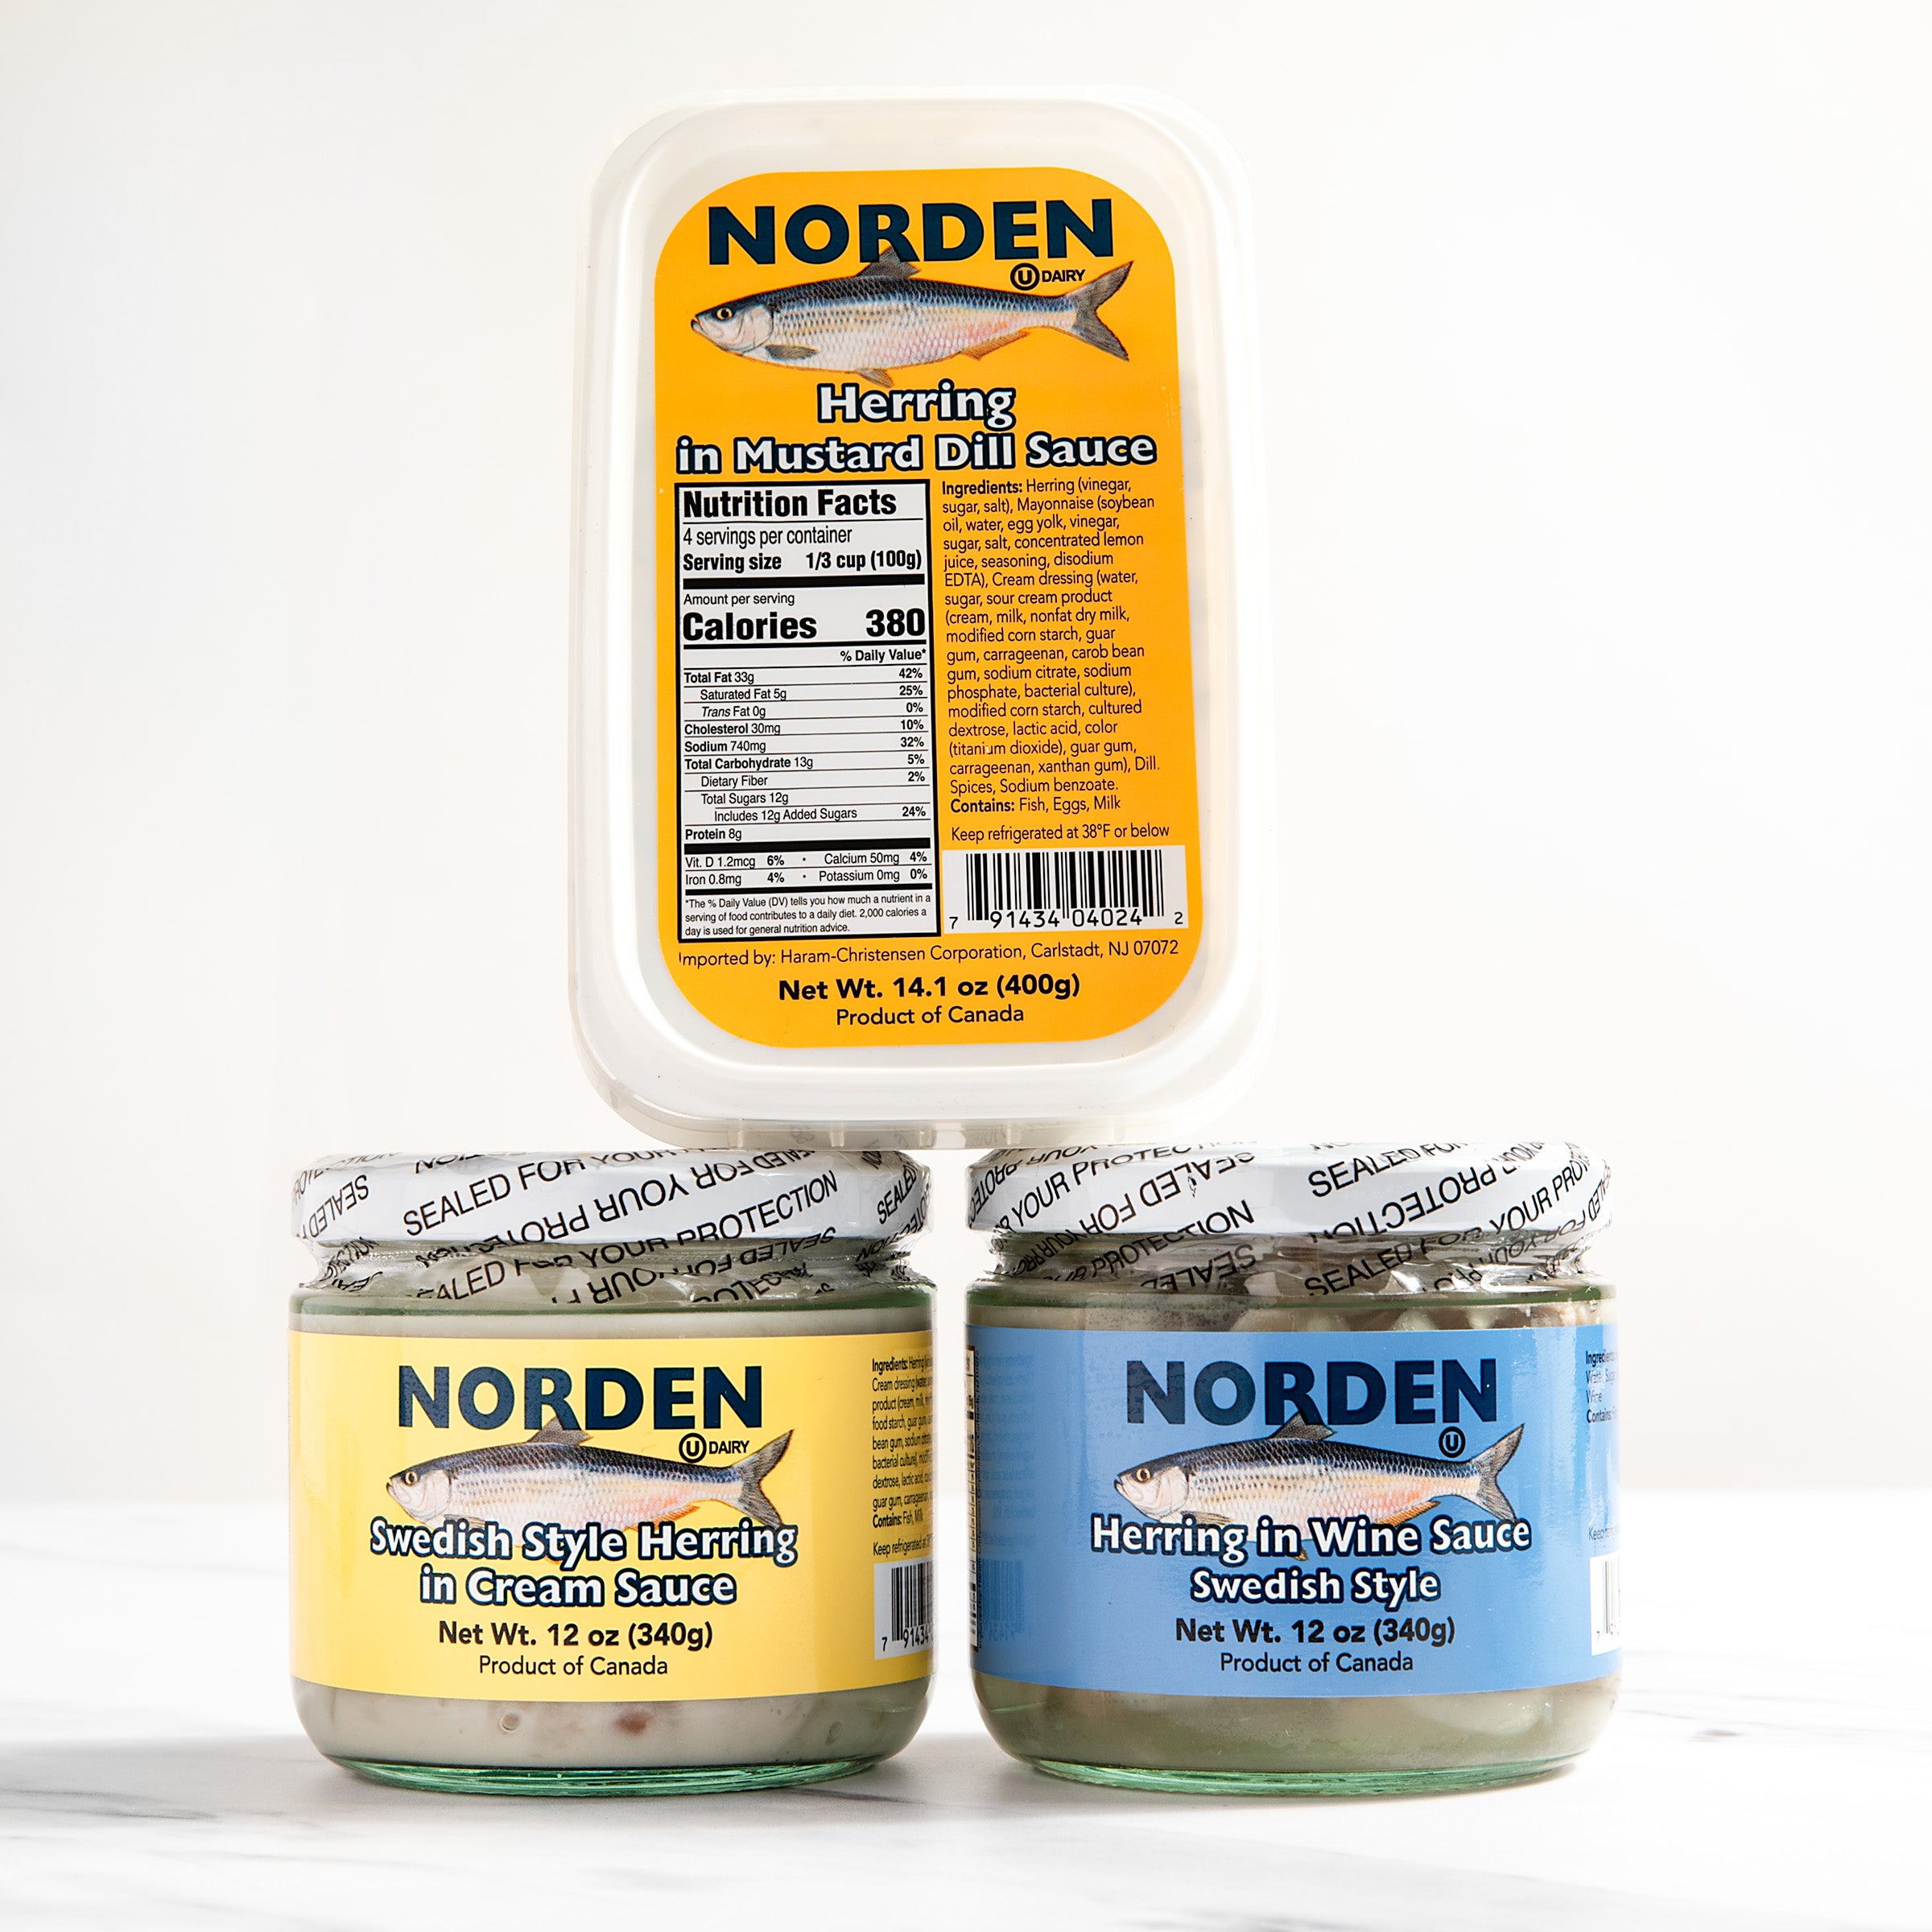 igourmet_6189_Herring_Norden_Tuna, Herring & Smoked Salmon